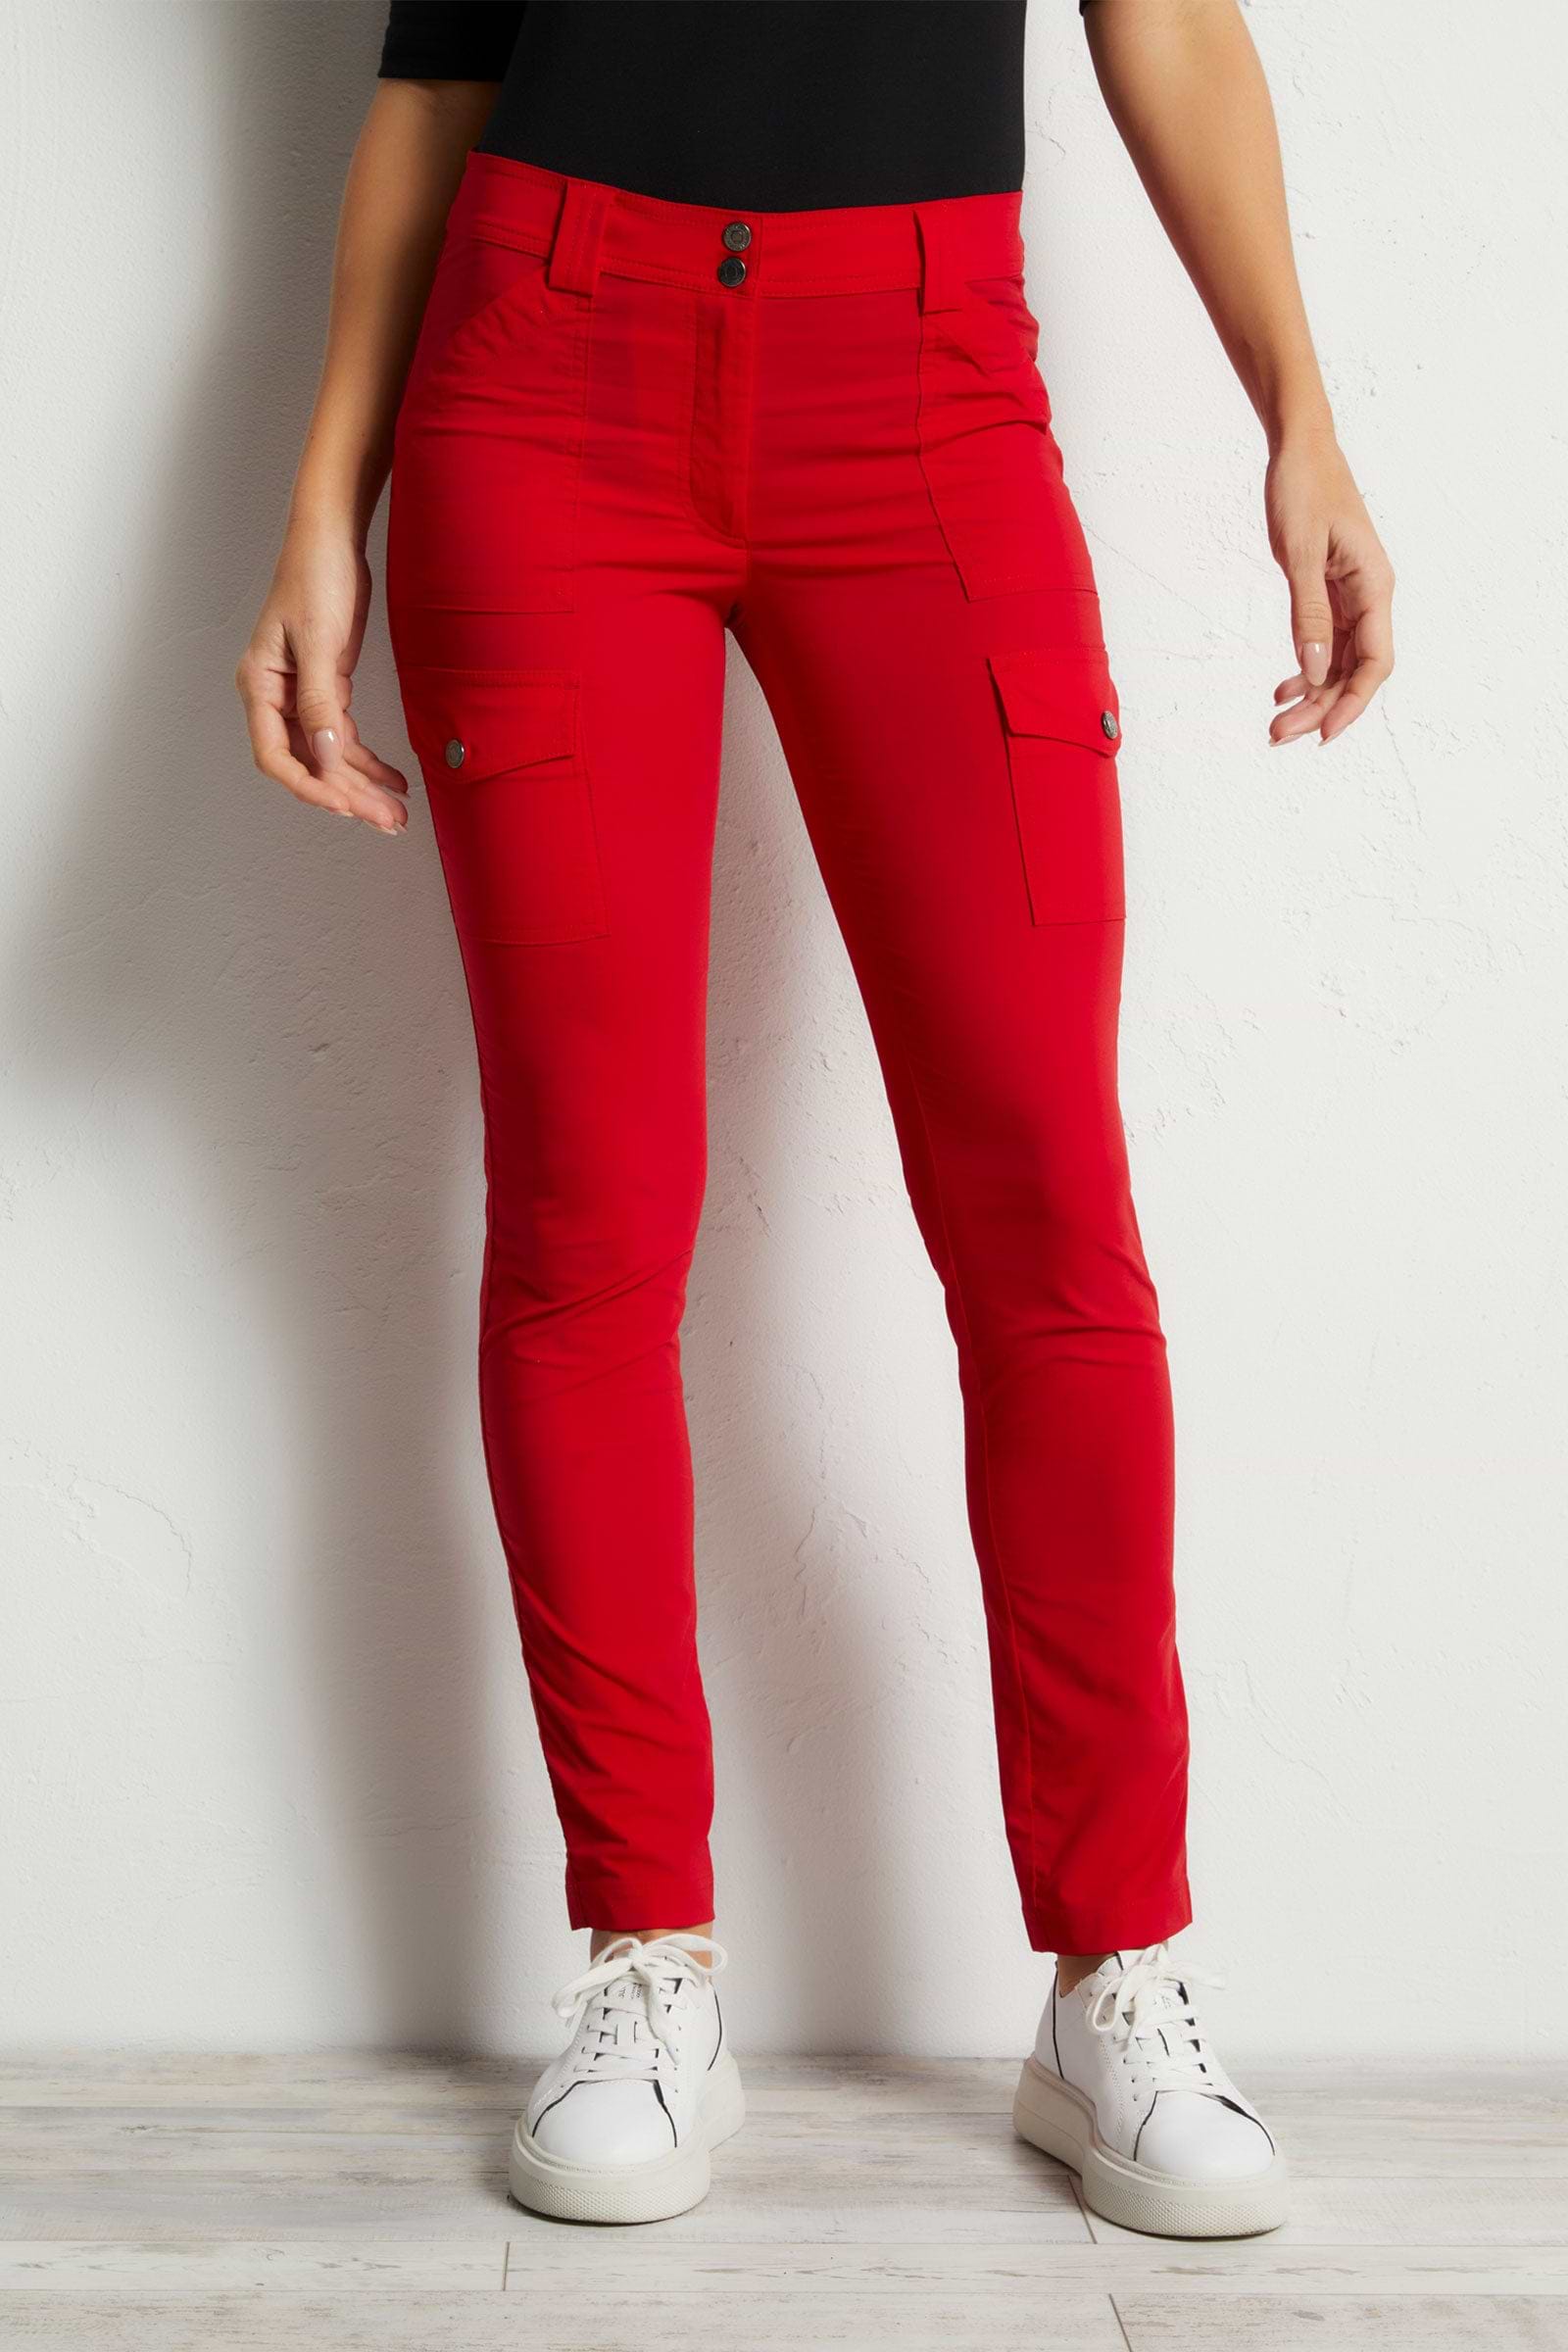 Women's Elegant Plain Skinny Red Pants S